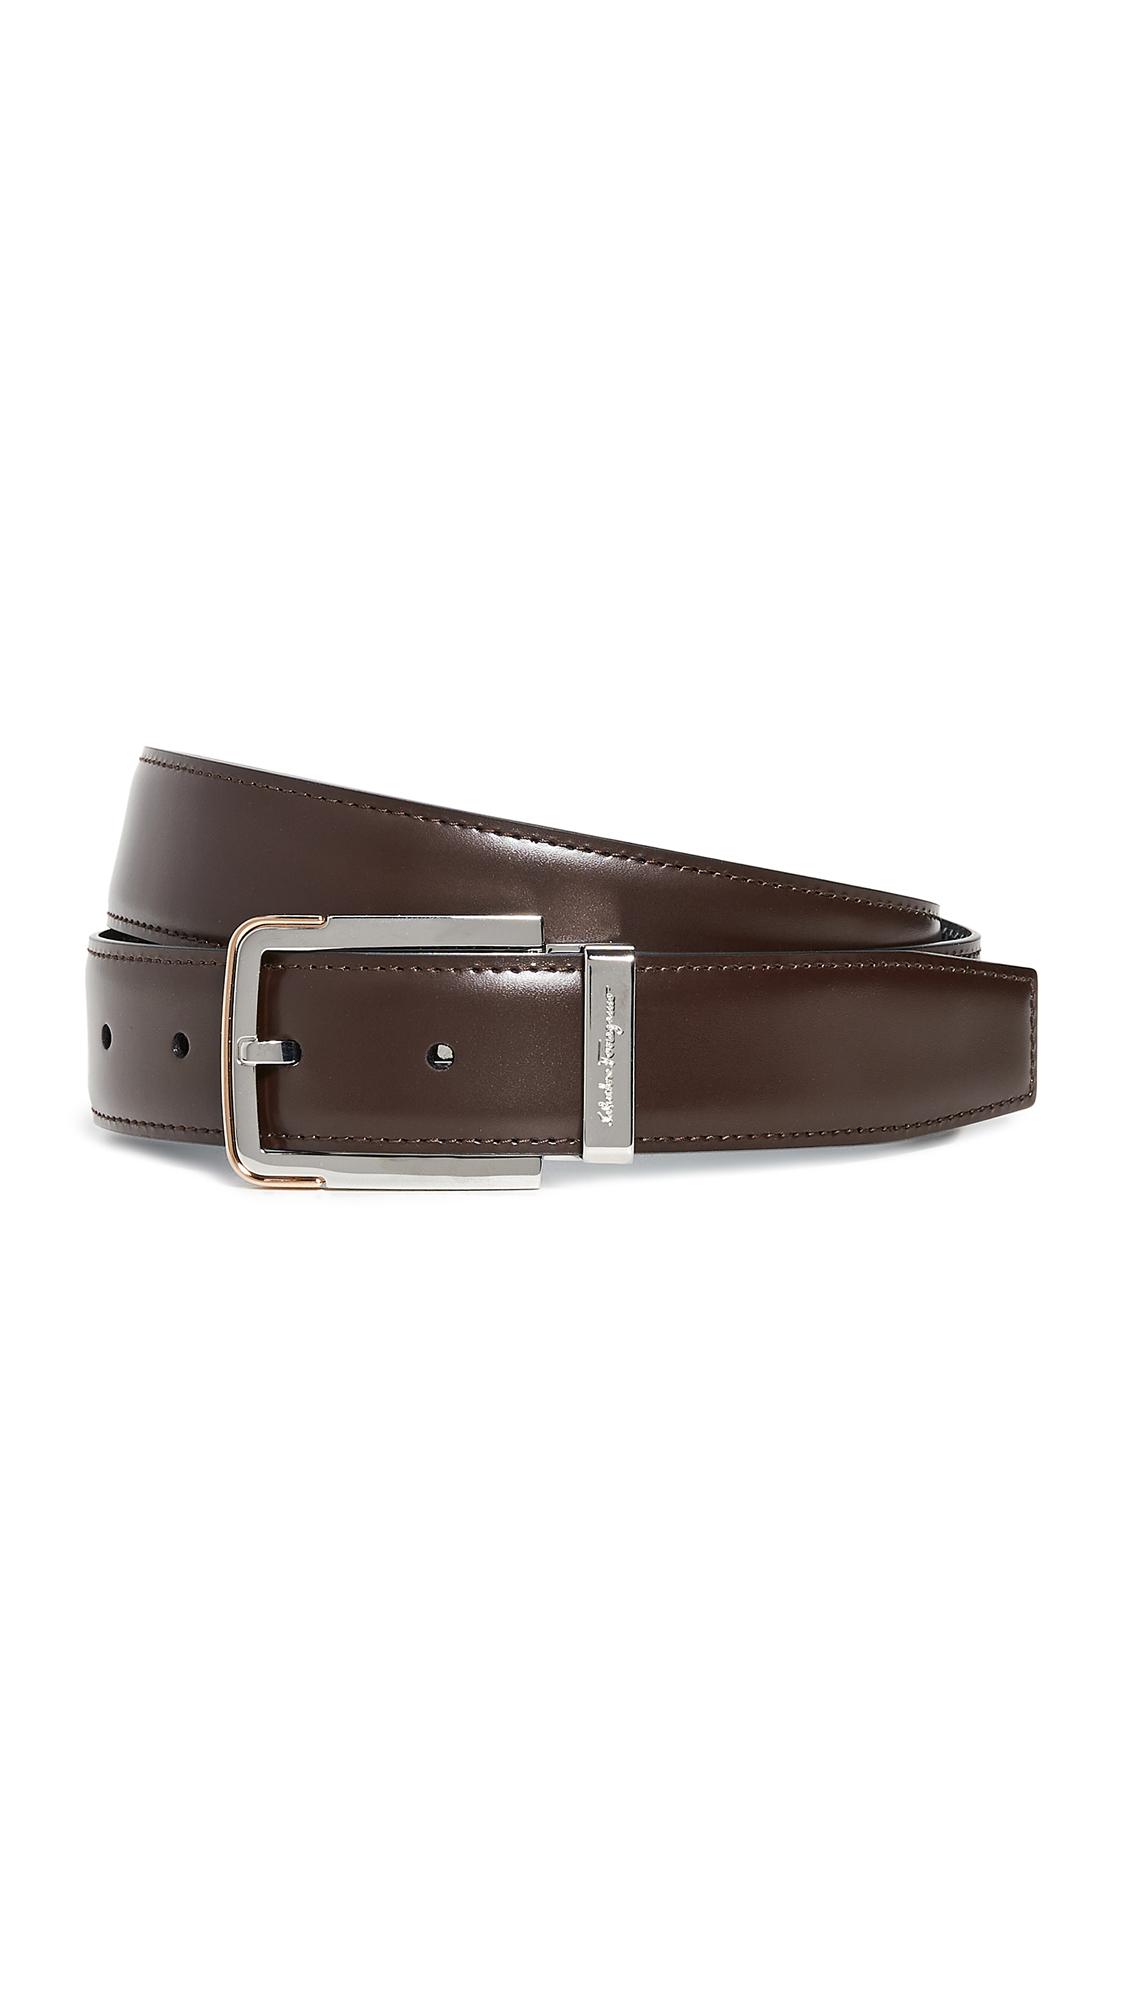 Ferragamo Silver Buckle Reversible Belt in Brown for Men - Lyst